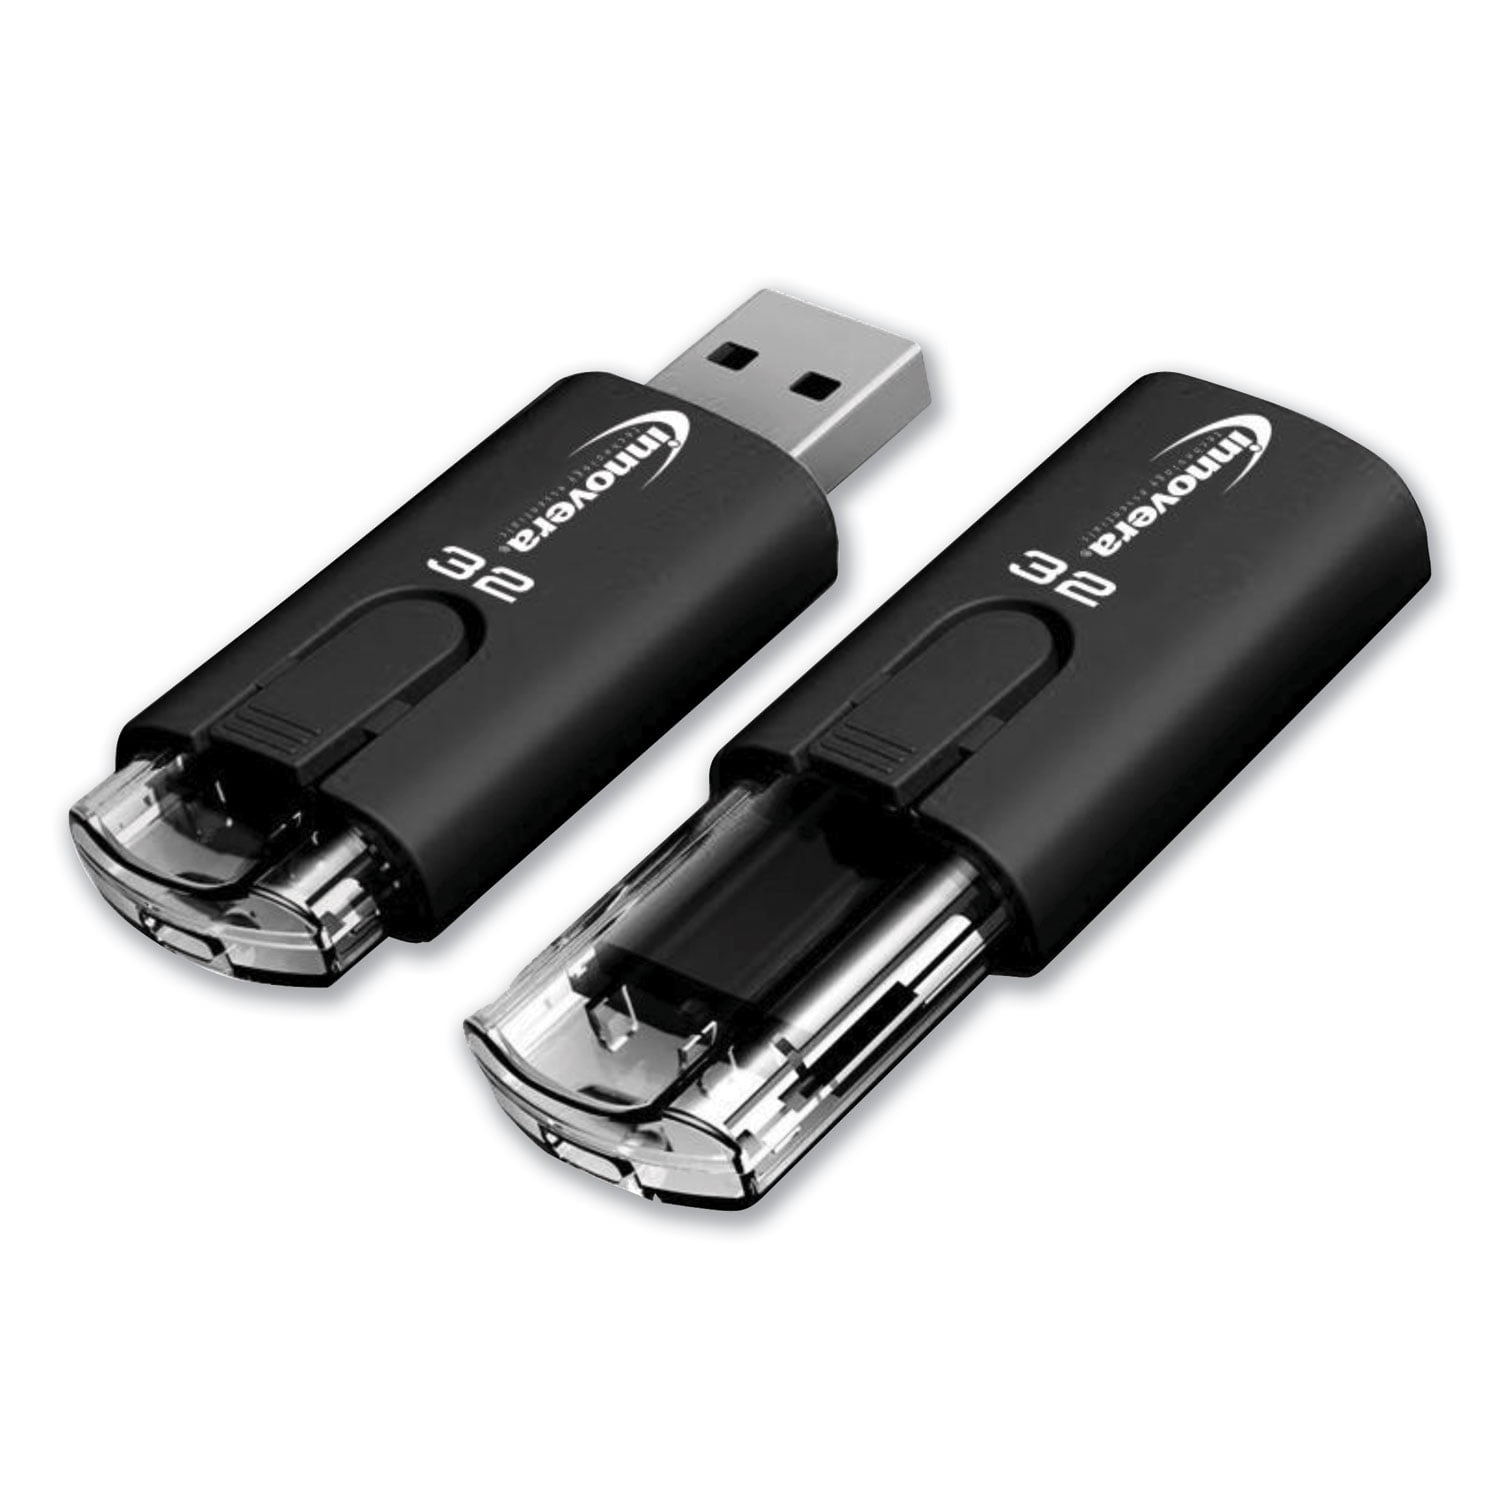 Ultra-Fast USB 3.0 Flash Drive, 32 GB - Walmart.com